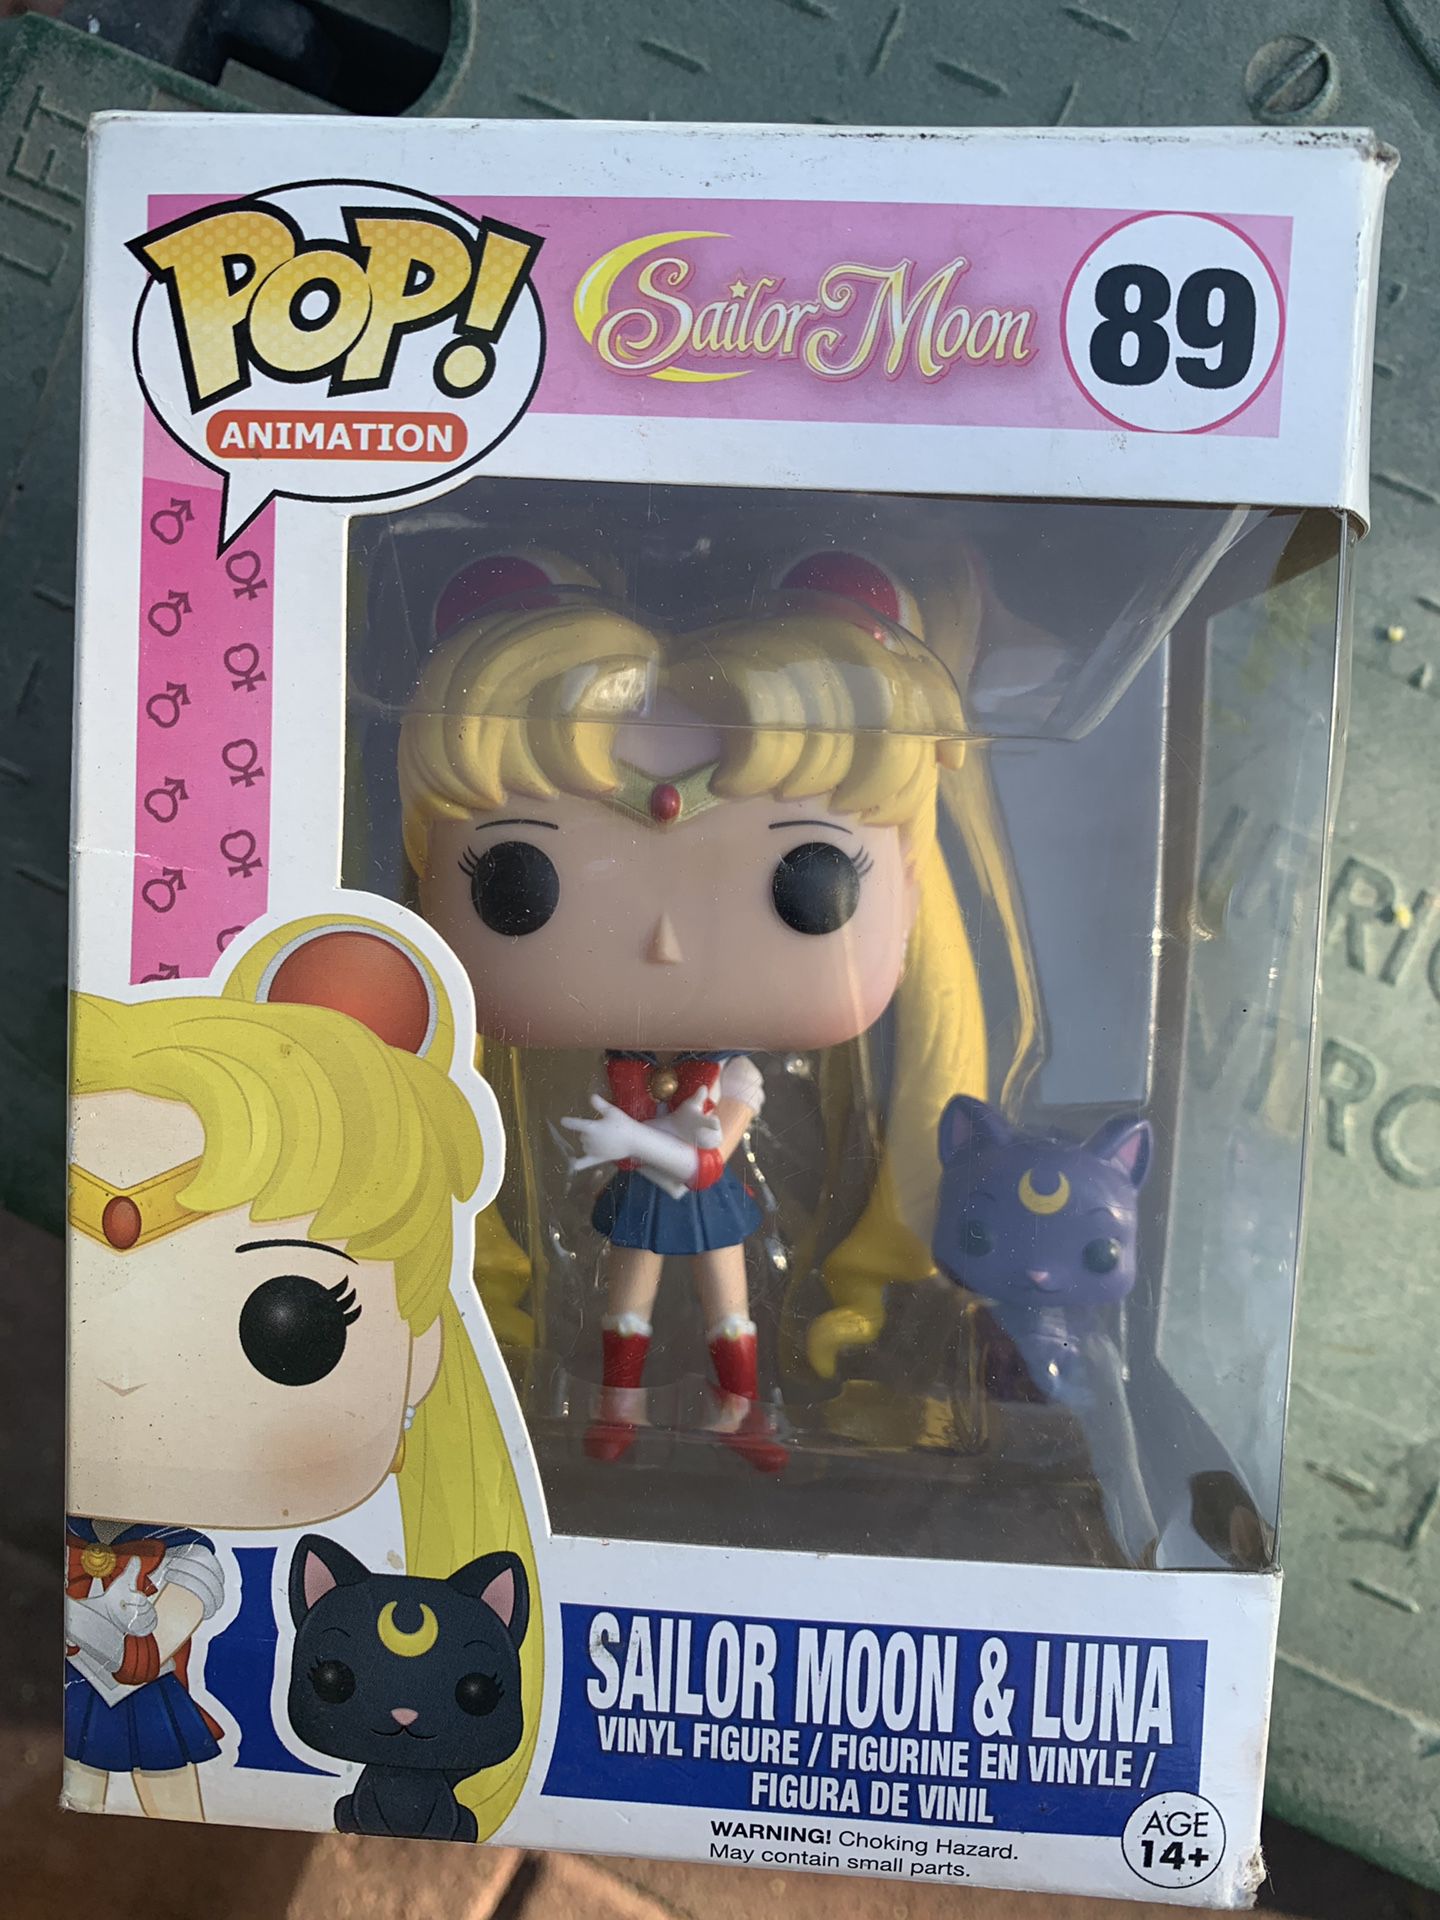 Sailor moon and Luna 89 pop